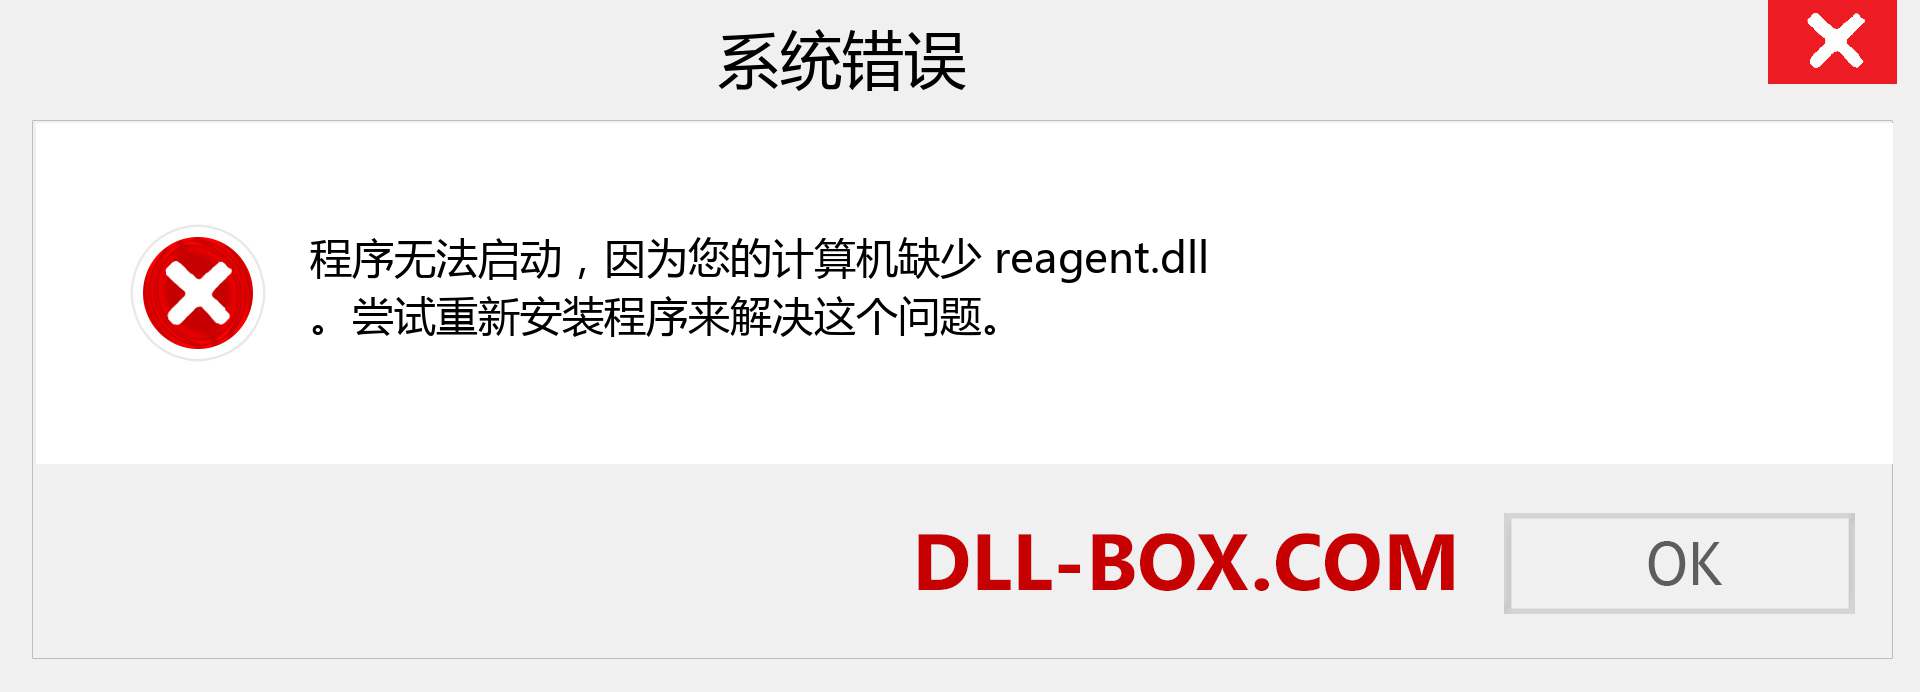 reagent.dll 文件丢失？。 适用于 Windows 7、8、10 的下载 - 修复 Windows、照片、图像上的 reagent dll 丢失错误